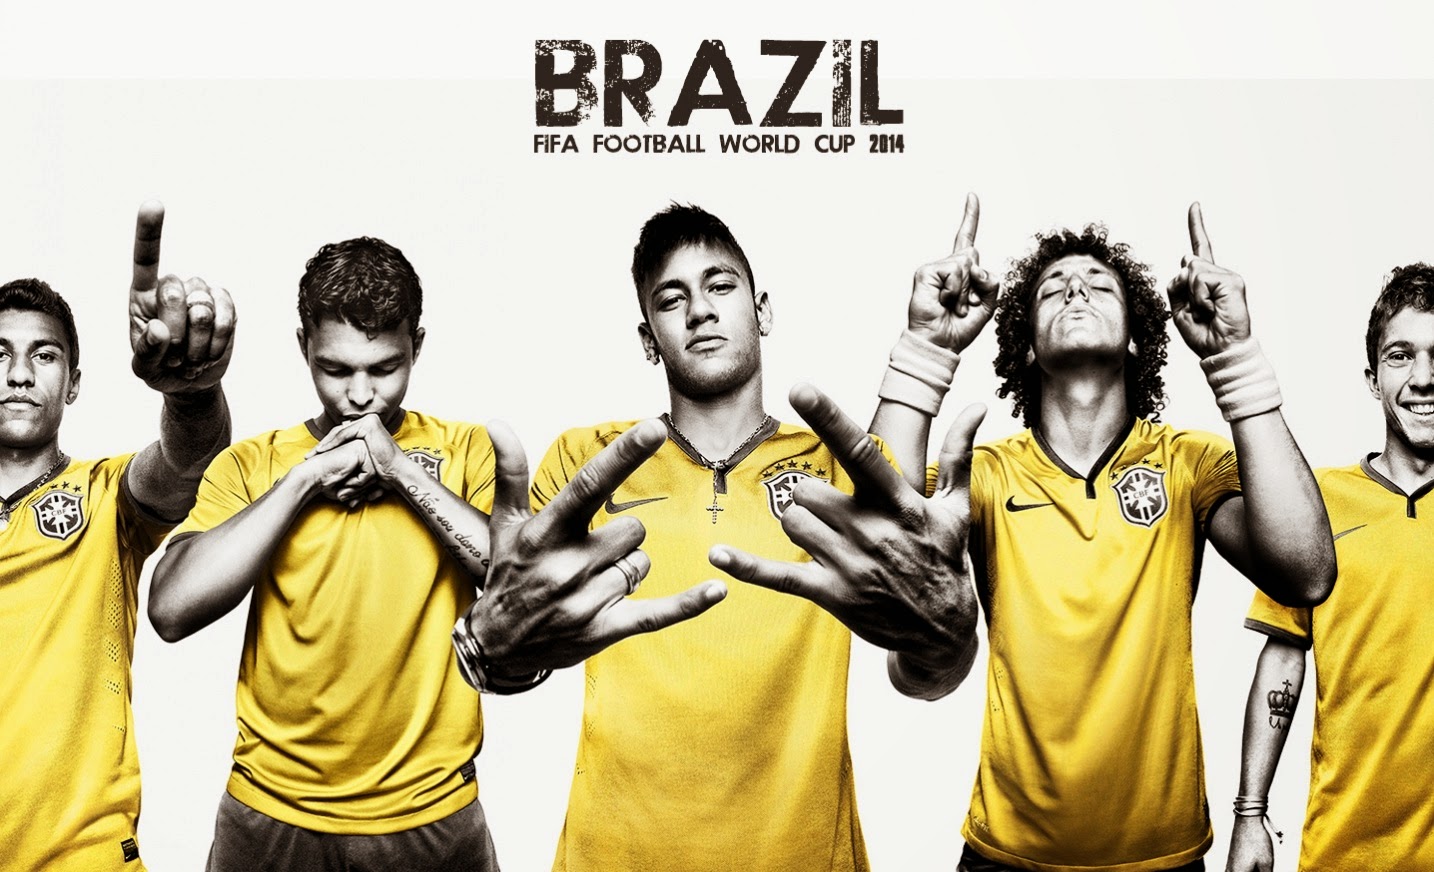 Neymar Best Wallpaper - Brazil Pic 2014 World Cup - HD Wallpaper 